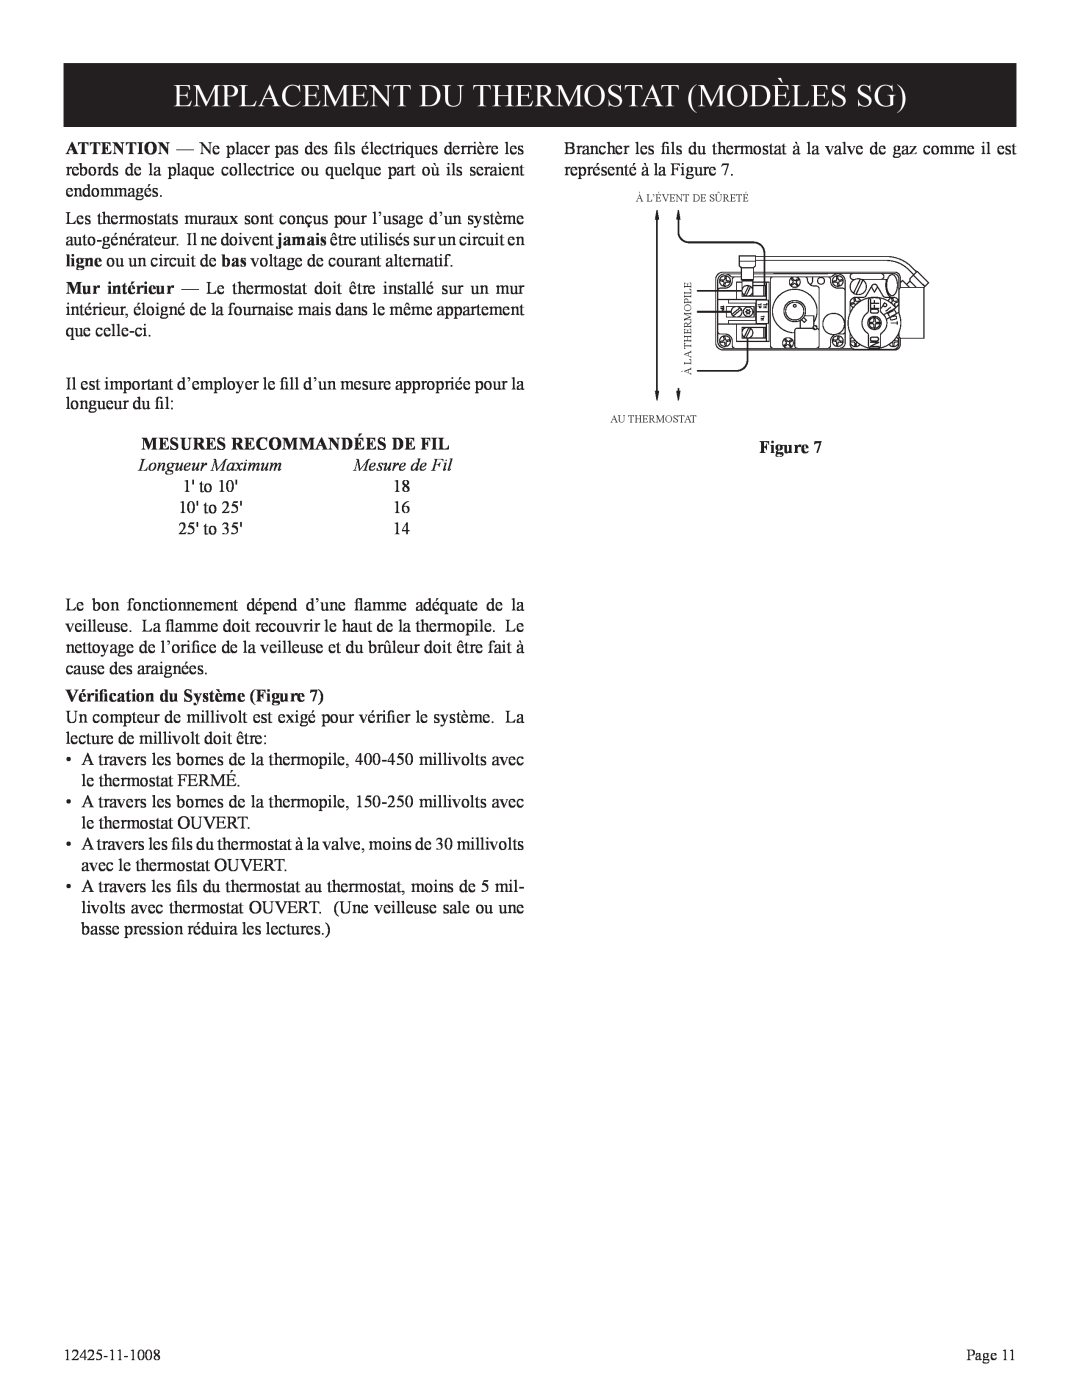 Empire Products GWT-35-2(SG Emplacement Du Thermostat Modèles Sg, Mesures Recommandées De Fil, Mesure de Fil, 1 to, 10 to 